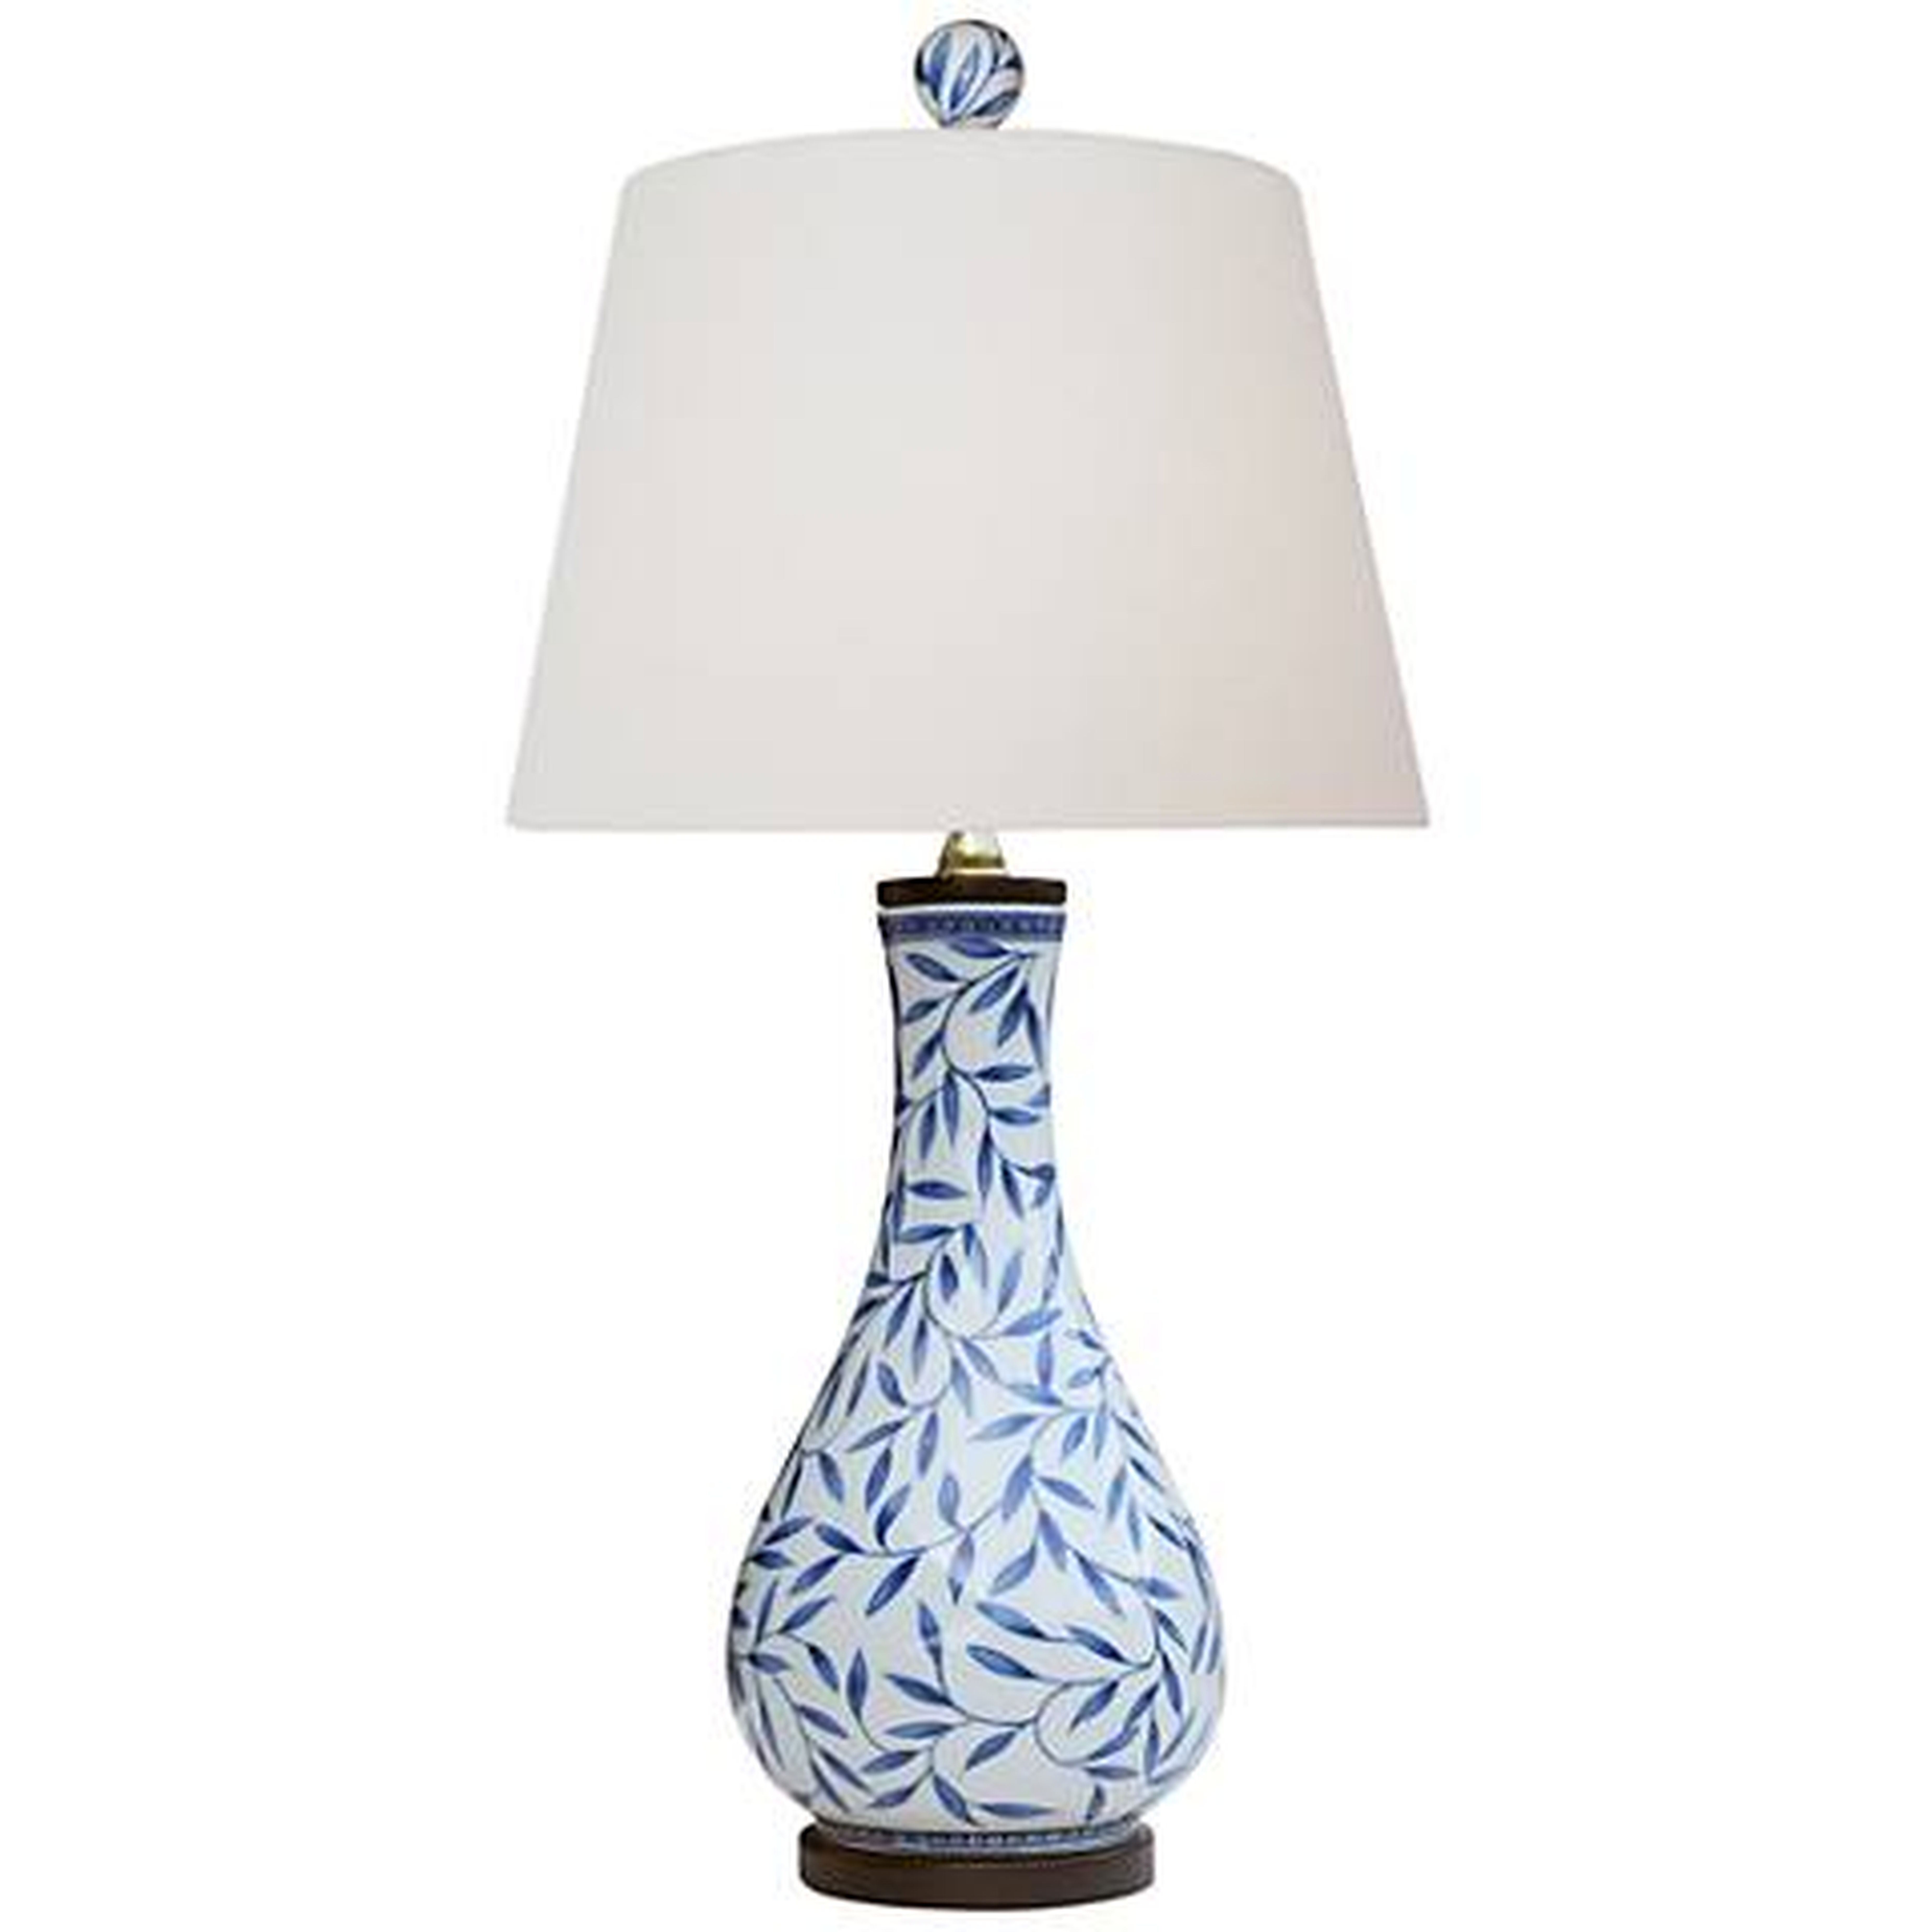 Yangtze Blue and White Porcelain Vase Table Lamp - Lamps Plus